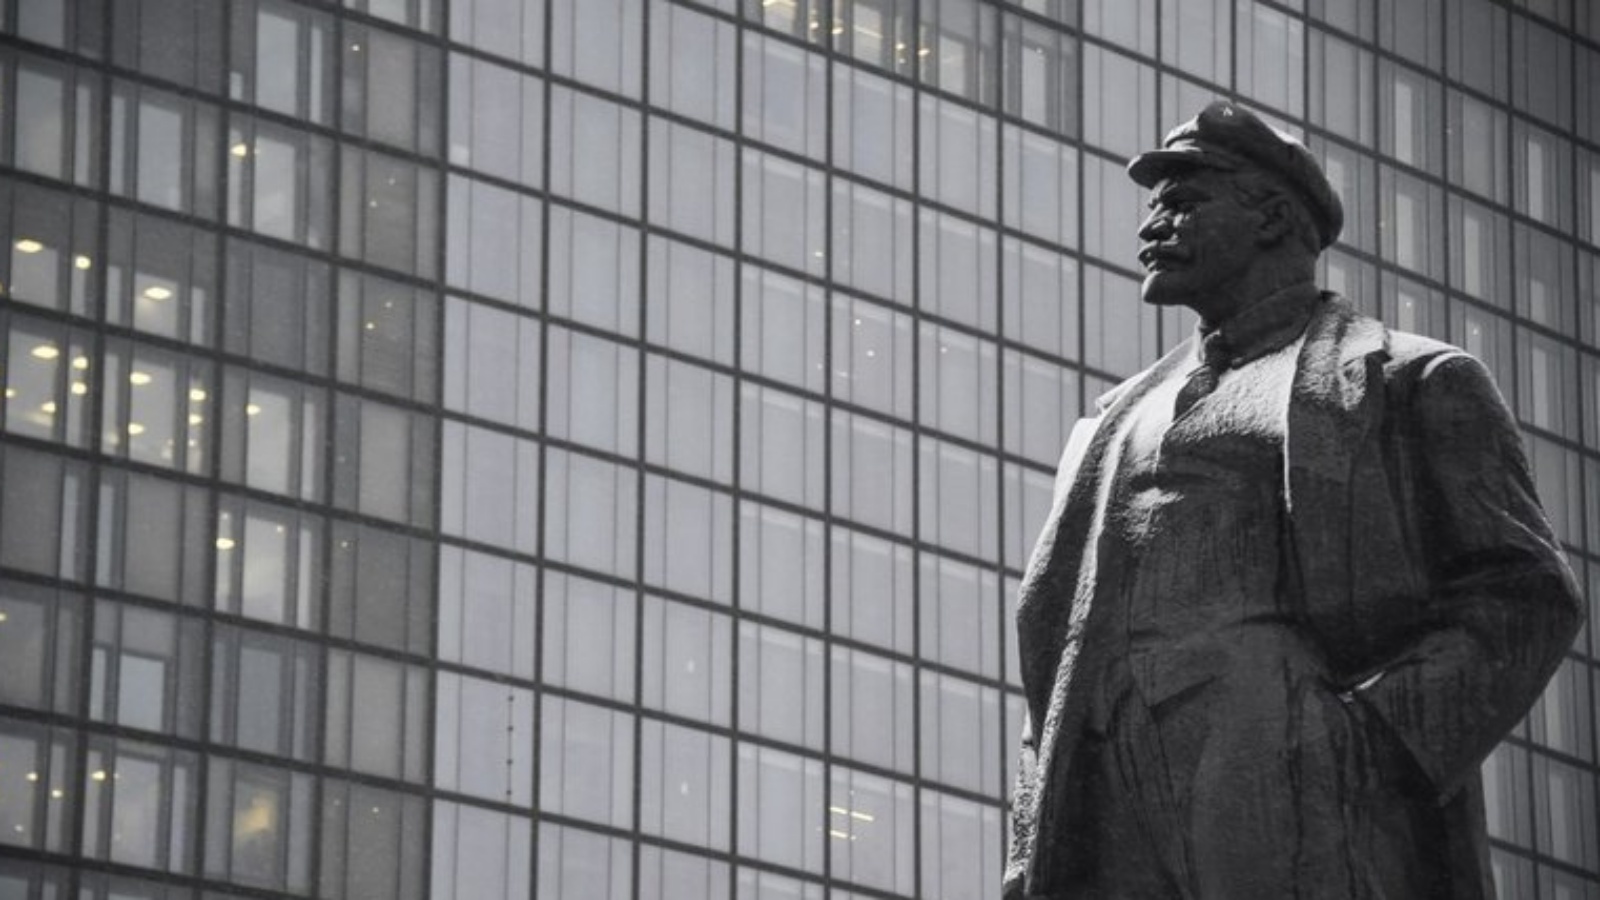 تمت إزالة العديد من تماثيل لينين في أعقاب ثورة 2014 التي أدت إلى إقالة رئيس موال لروسيا، في محاولة 